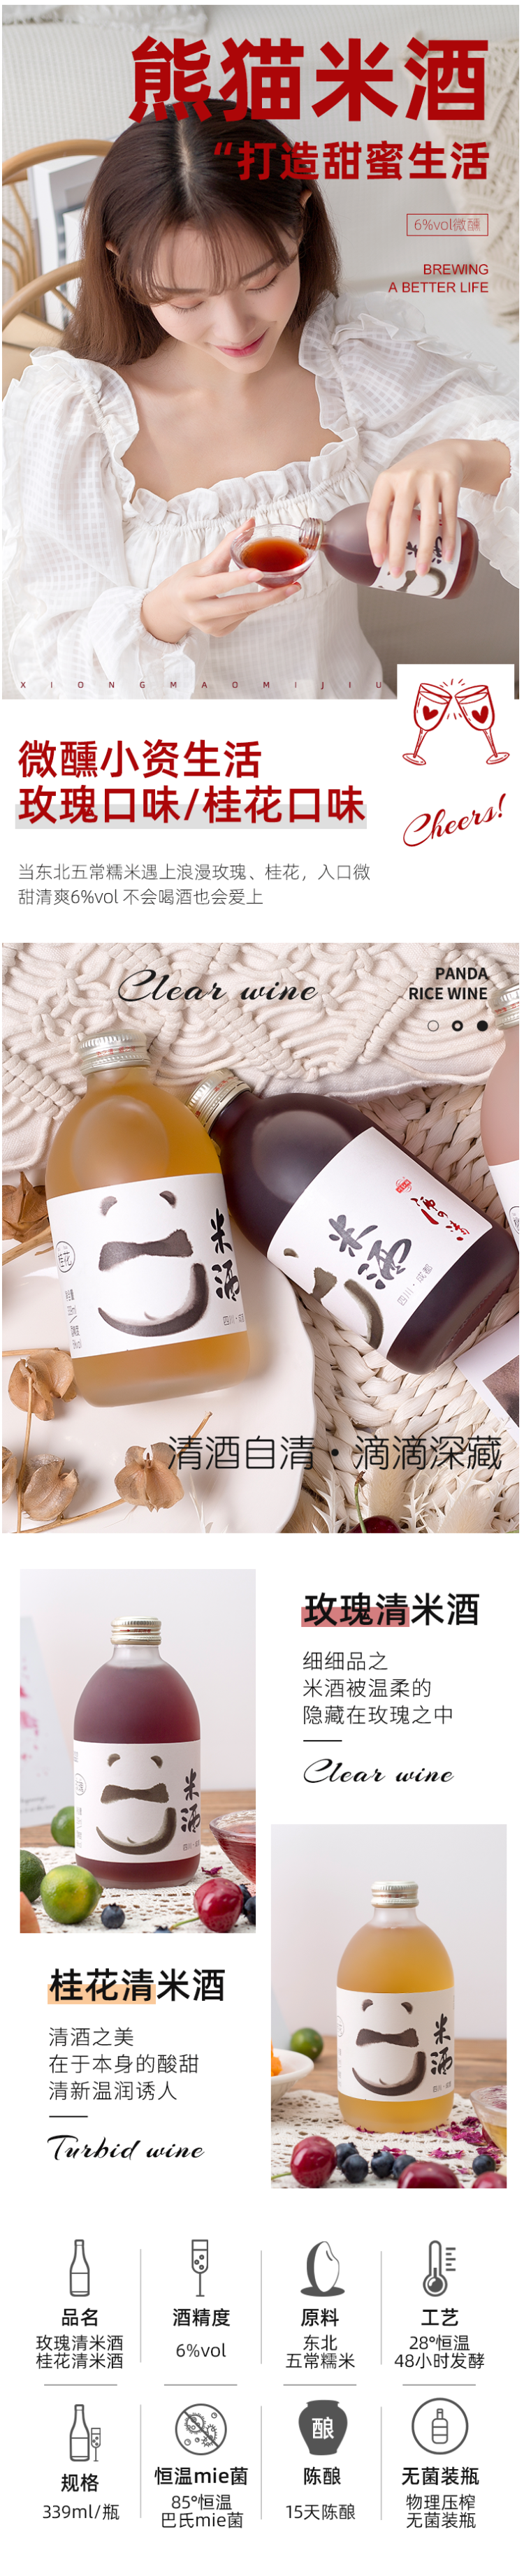 川红锦 熊猫微醺 6度 玫瑰味/桂花味糯米甜酒 339ml单瓶 图1